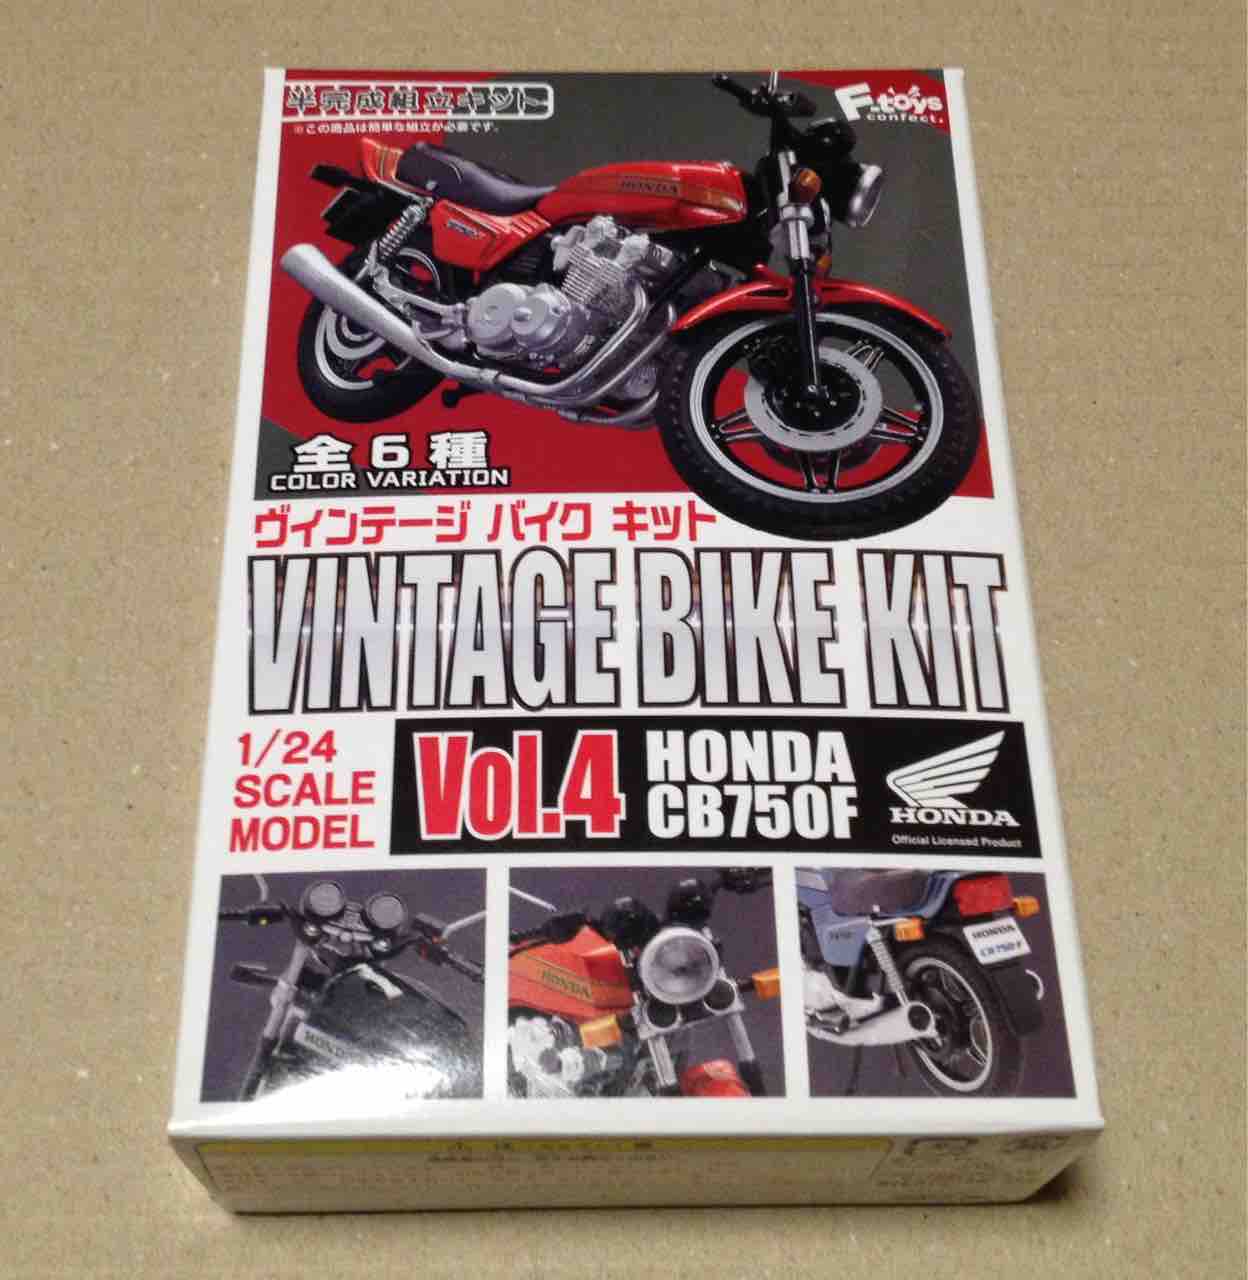 ヴィンテージバイクキット Vol 4 Honda Cb750f Ftoys 1 24 Scale 宇宙の足跡